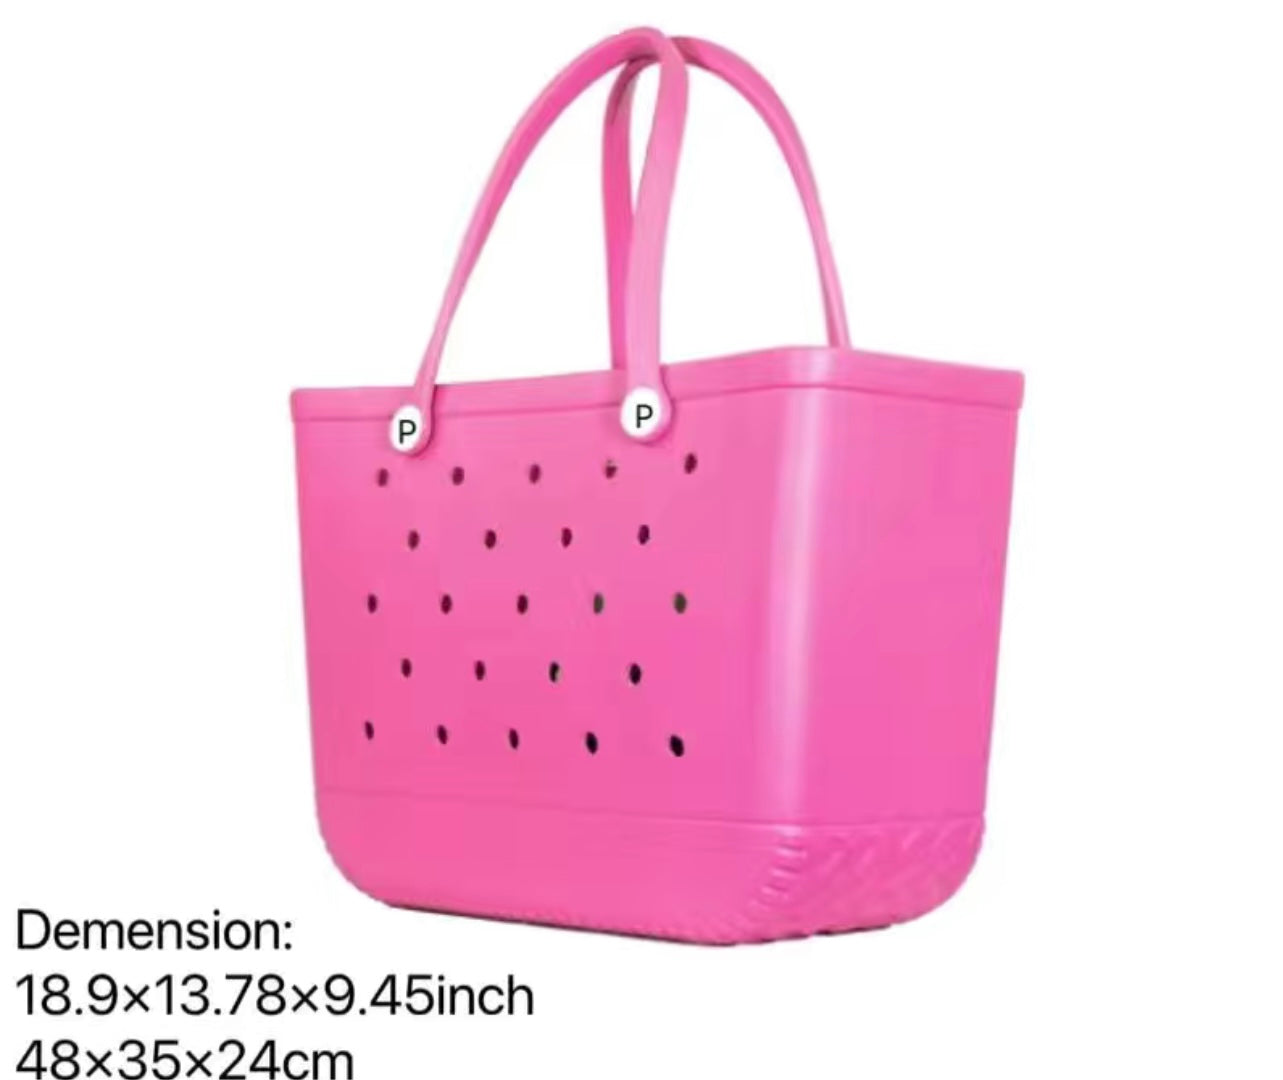 Pink Bogg Bag Dupe – Scotch Bonnet Boutique